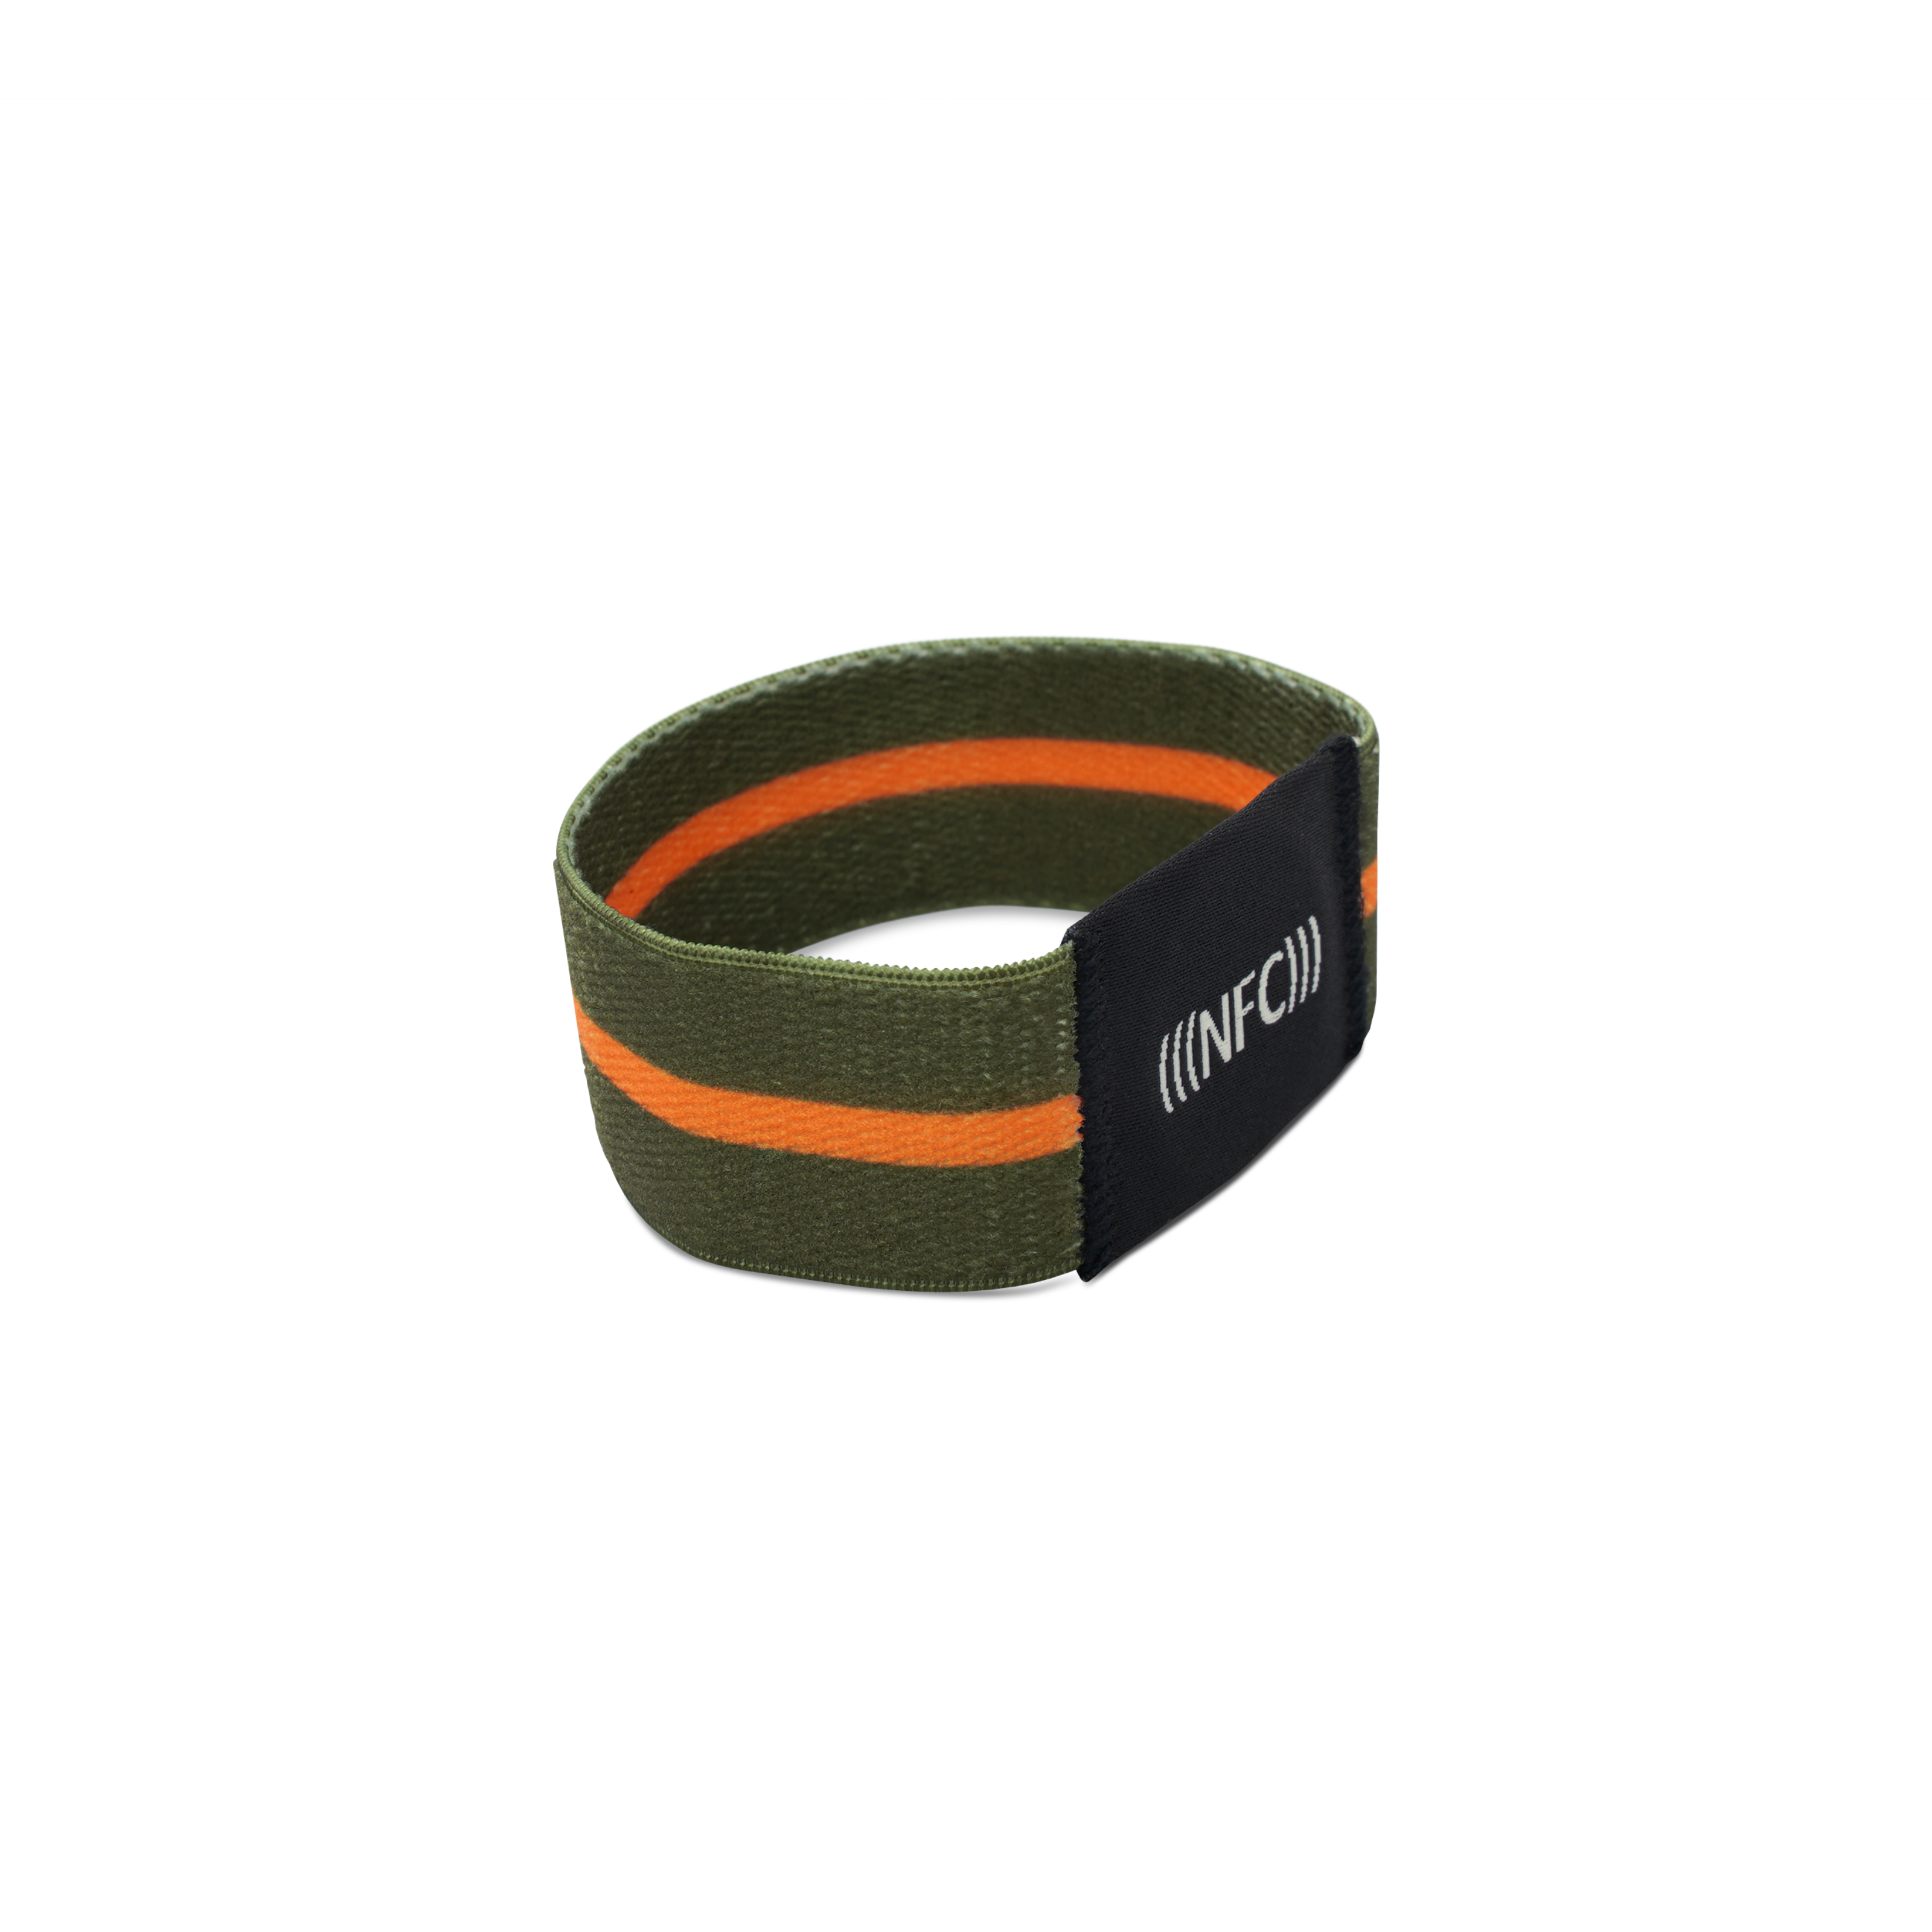 Seitenansicht NFC Armband aus grünem Stoff mit orangenem Streifen und "NFC" Aufstickung